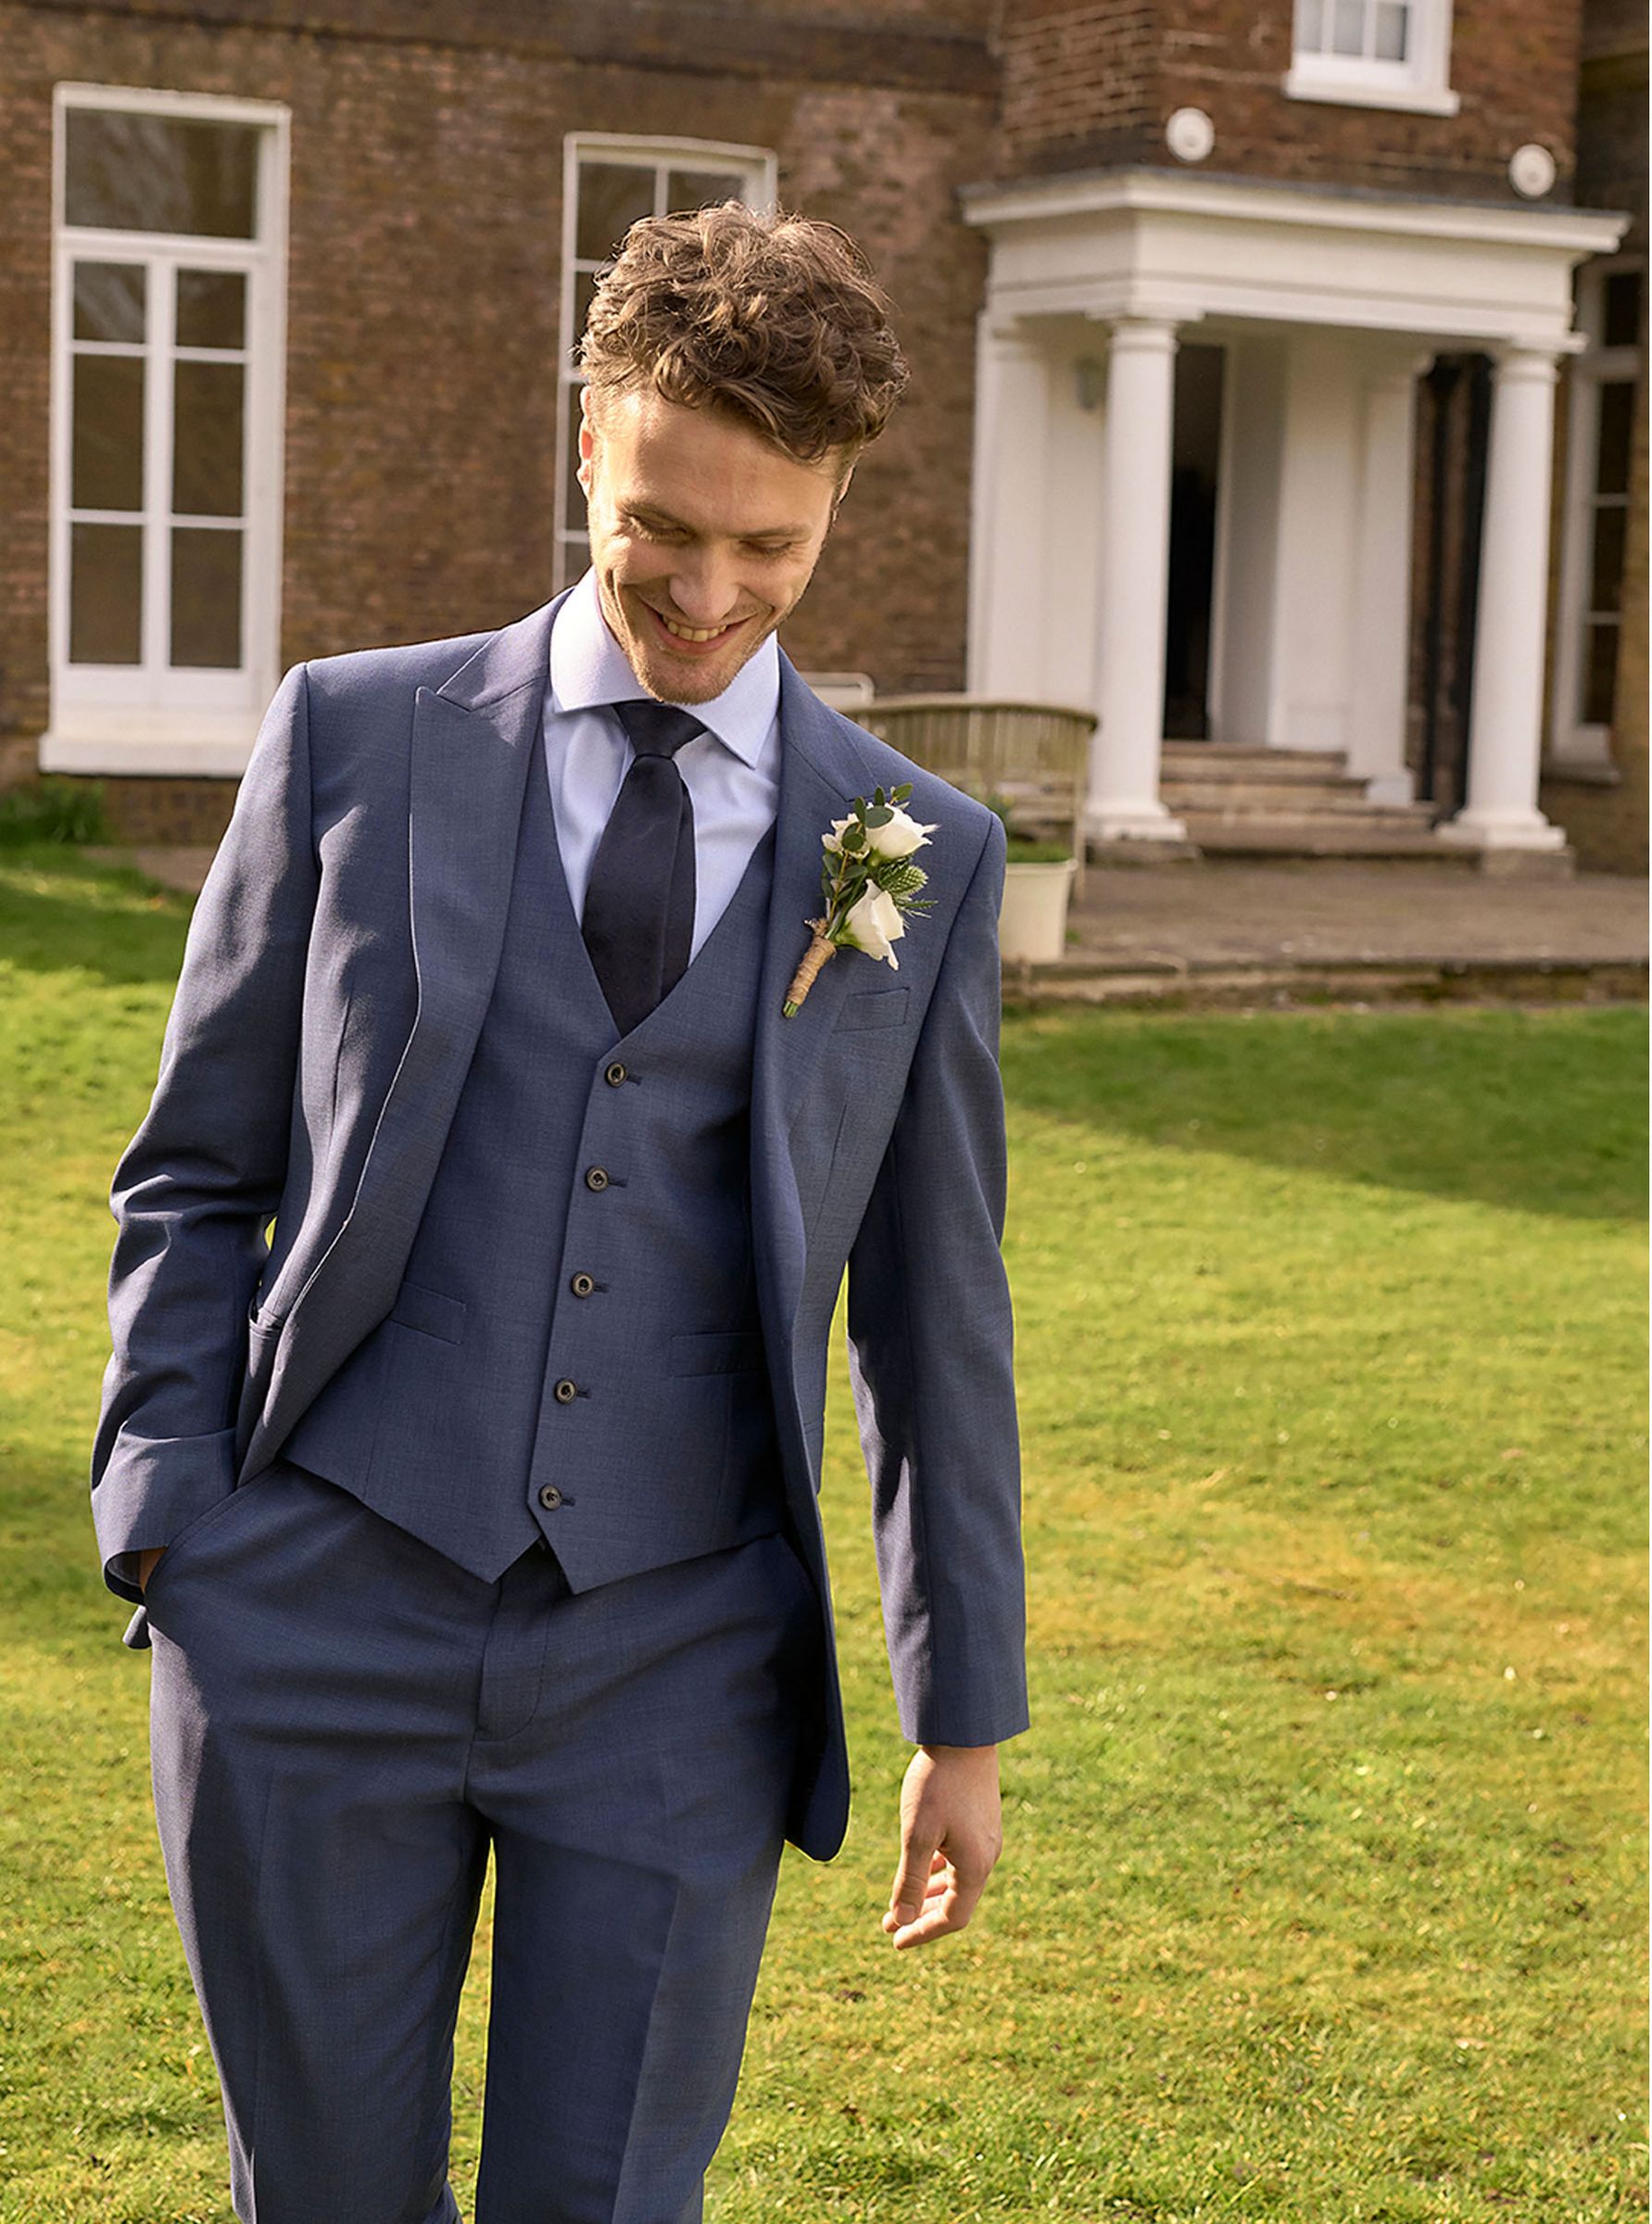 Men's Wedding Suits